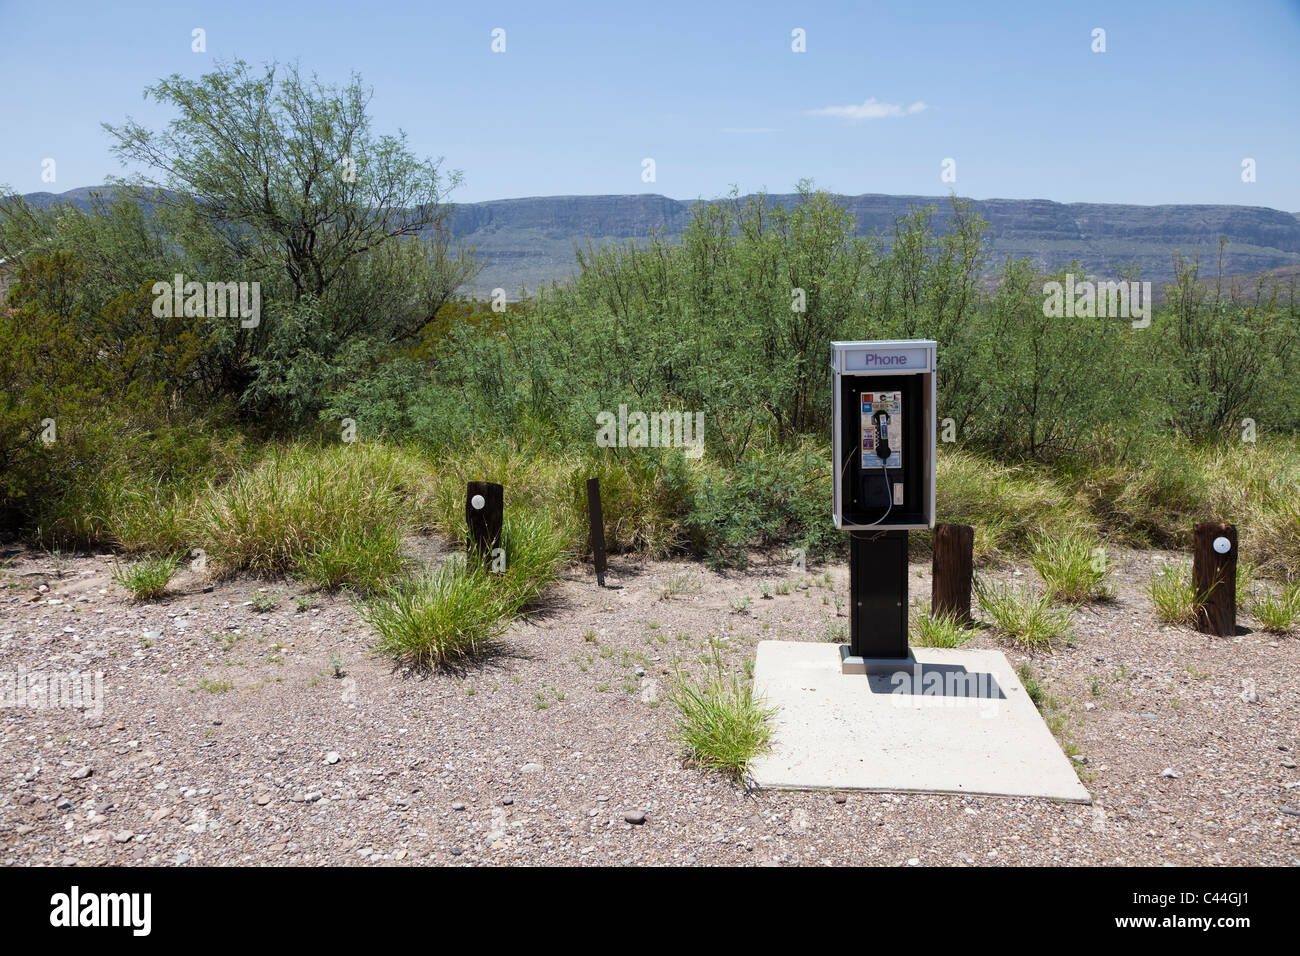 Teléfono público en desierto en Castolon Parque Nacional Big Bend, Texas, EE.UU. Foto de stock